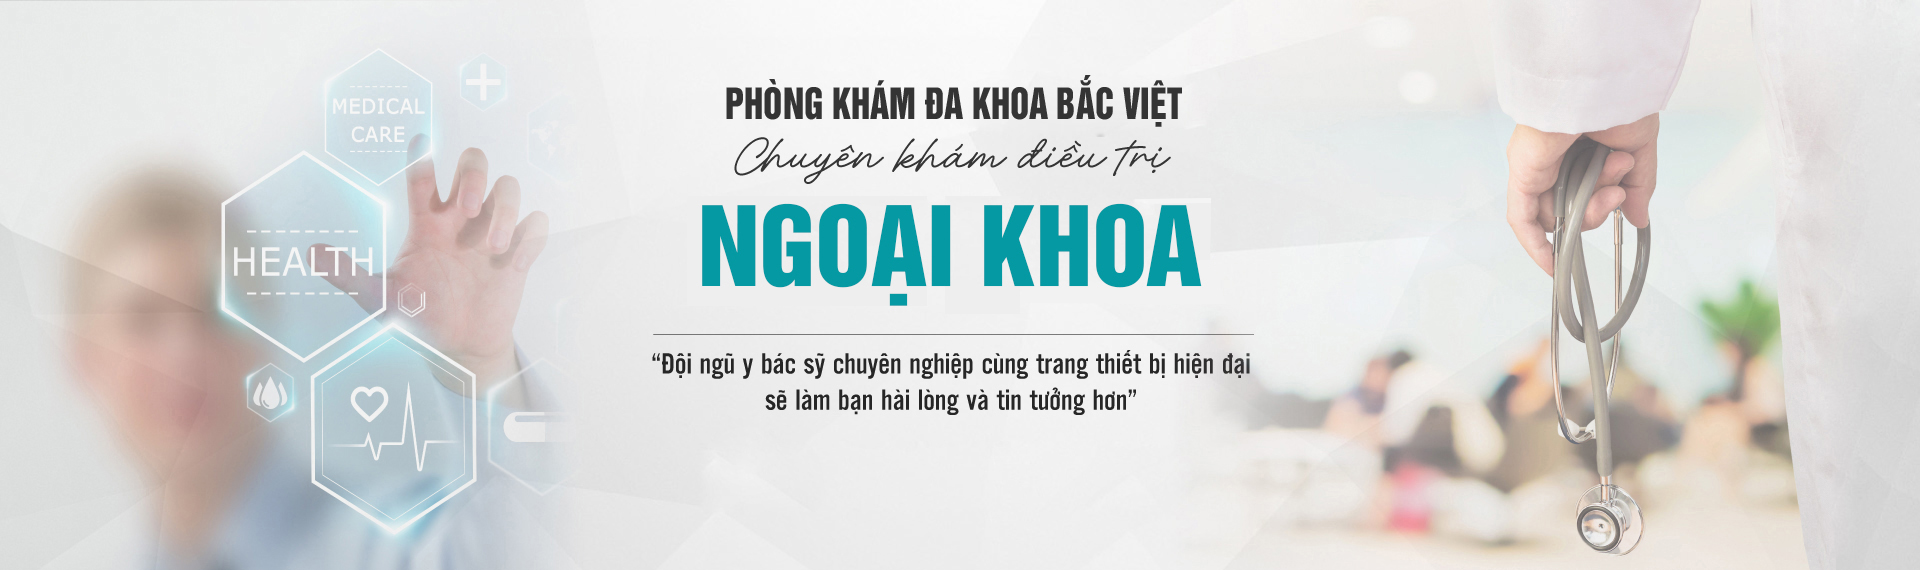 chat-luong-phong-kham-thien-hoa-co-tot-khong